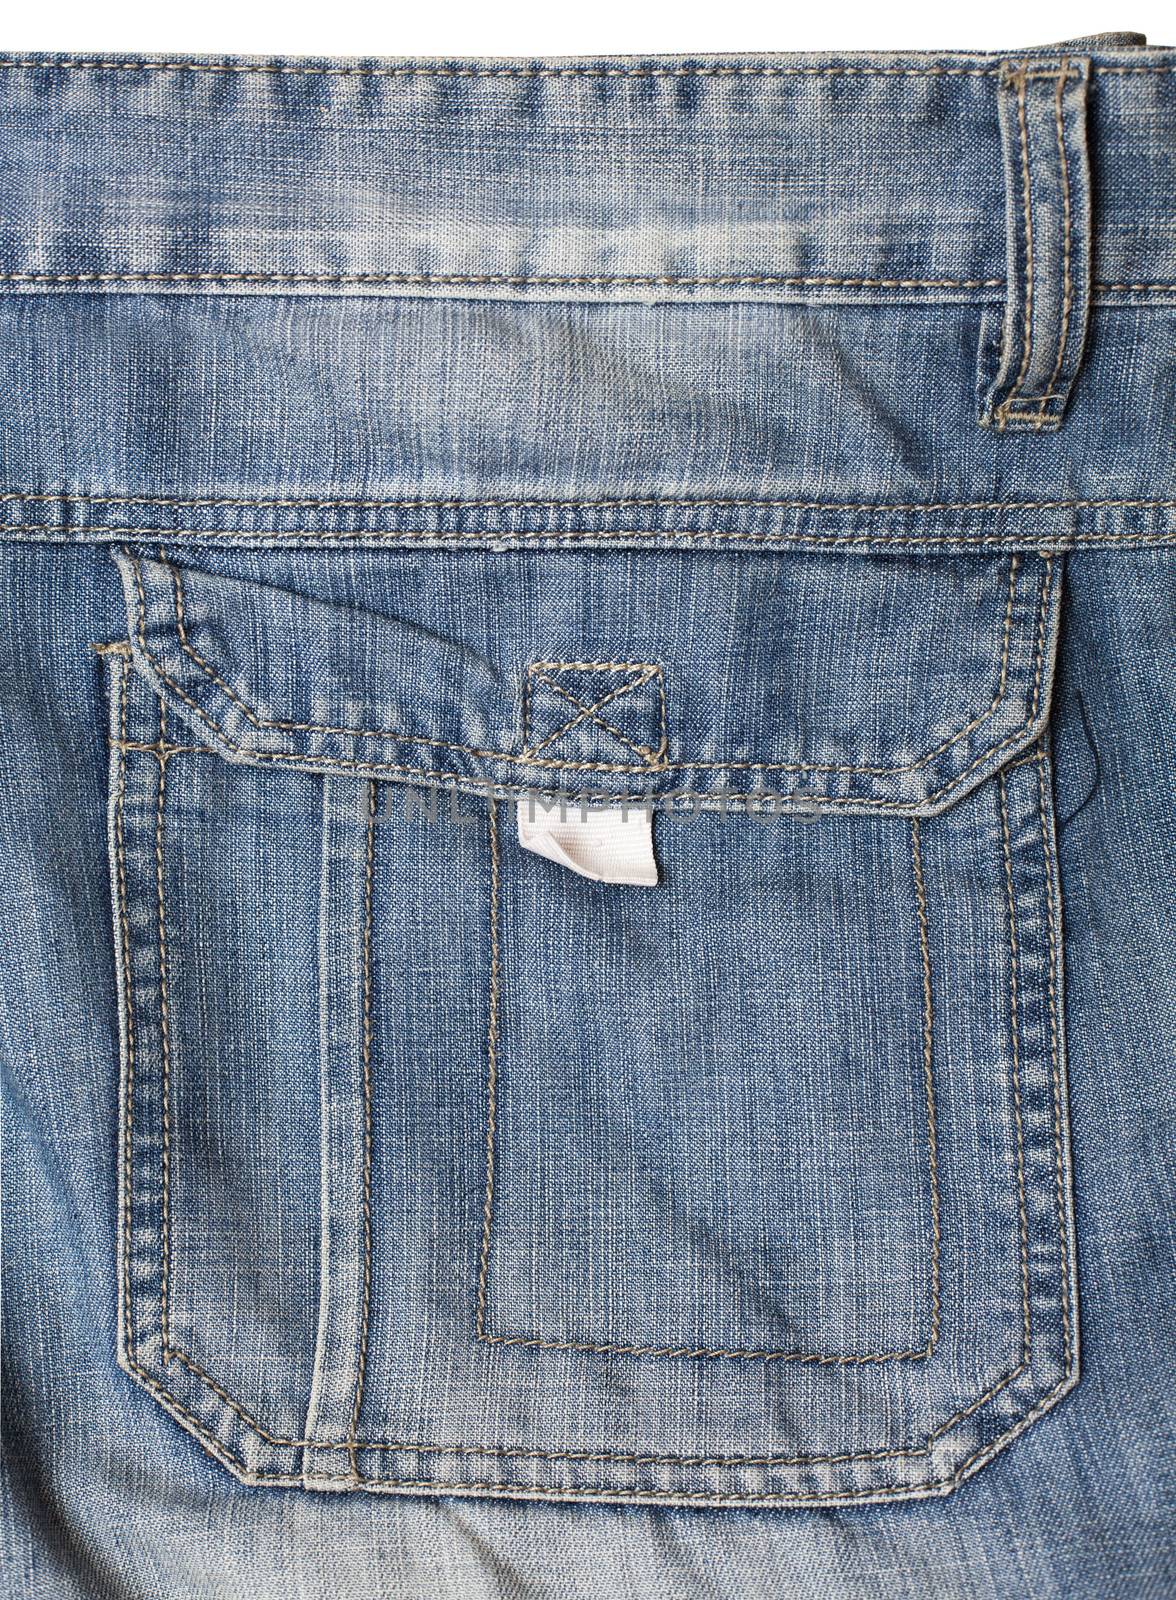 blue jeans pocket by anelina